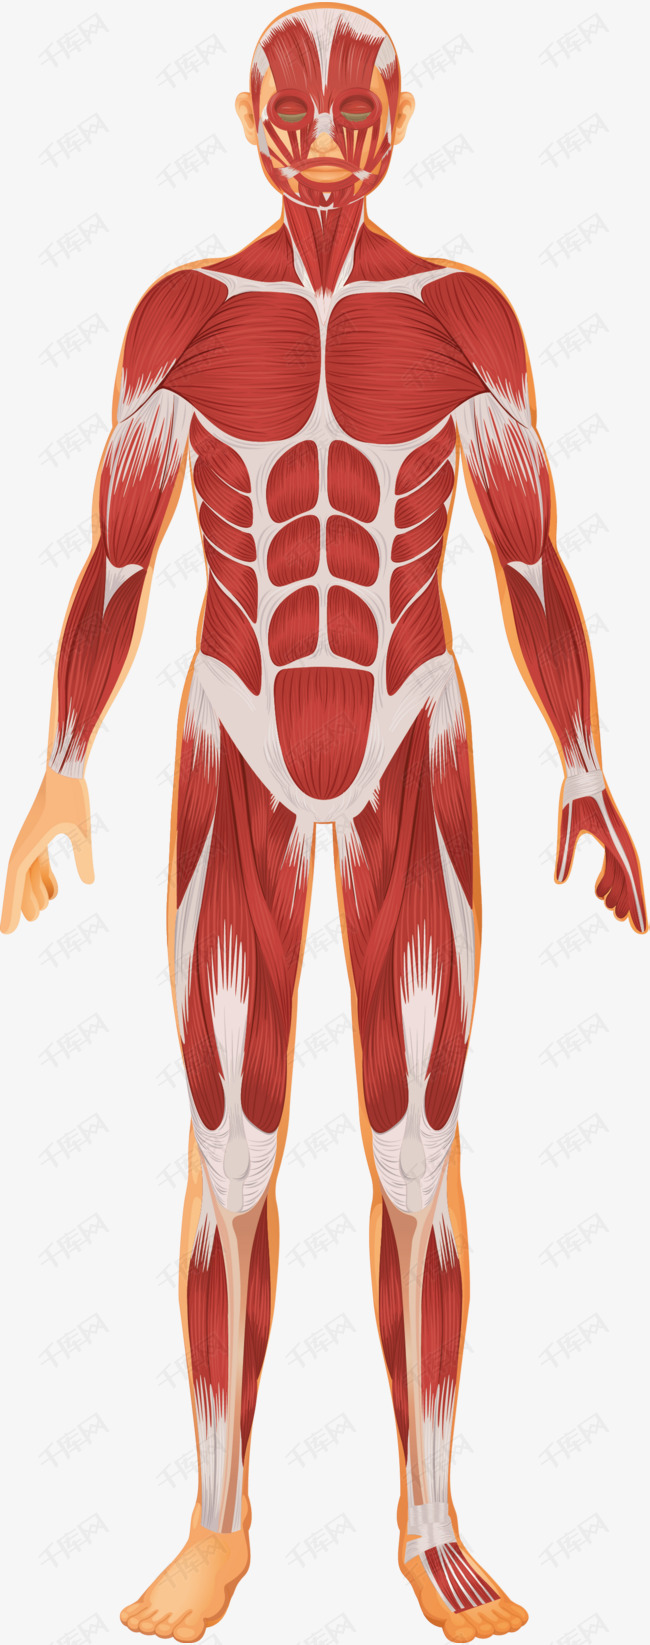 人体解剖图的素材免抠器官卡通人体人体躯干人的肢体人体器官卡通肢体